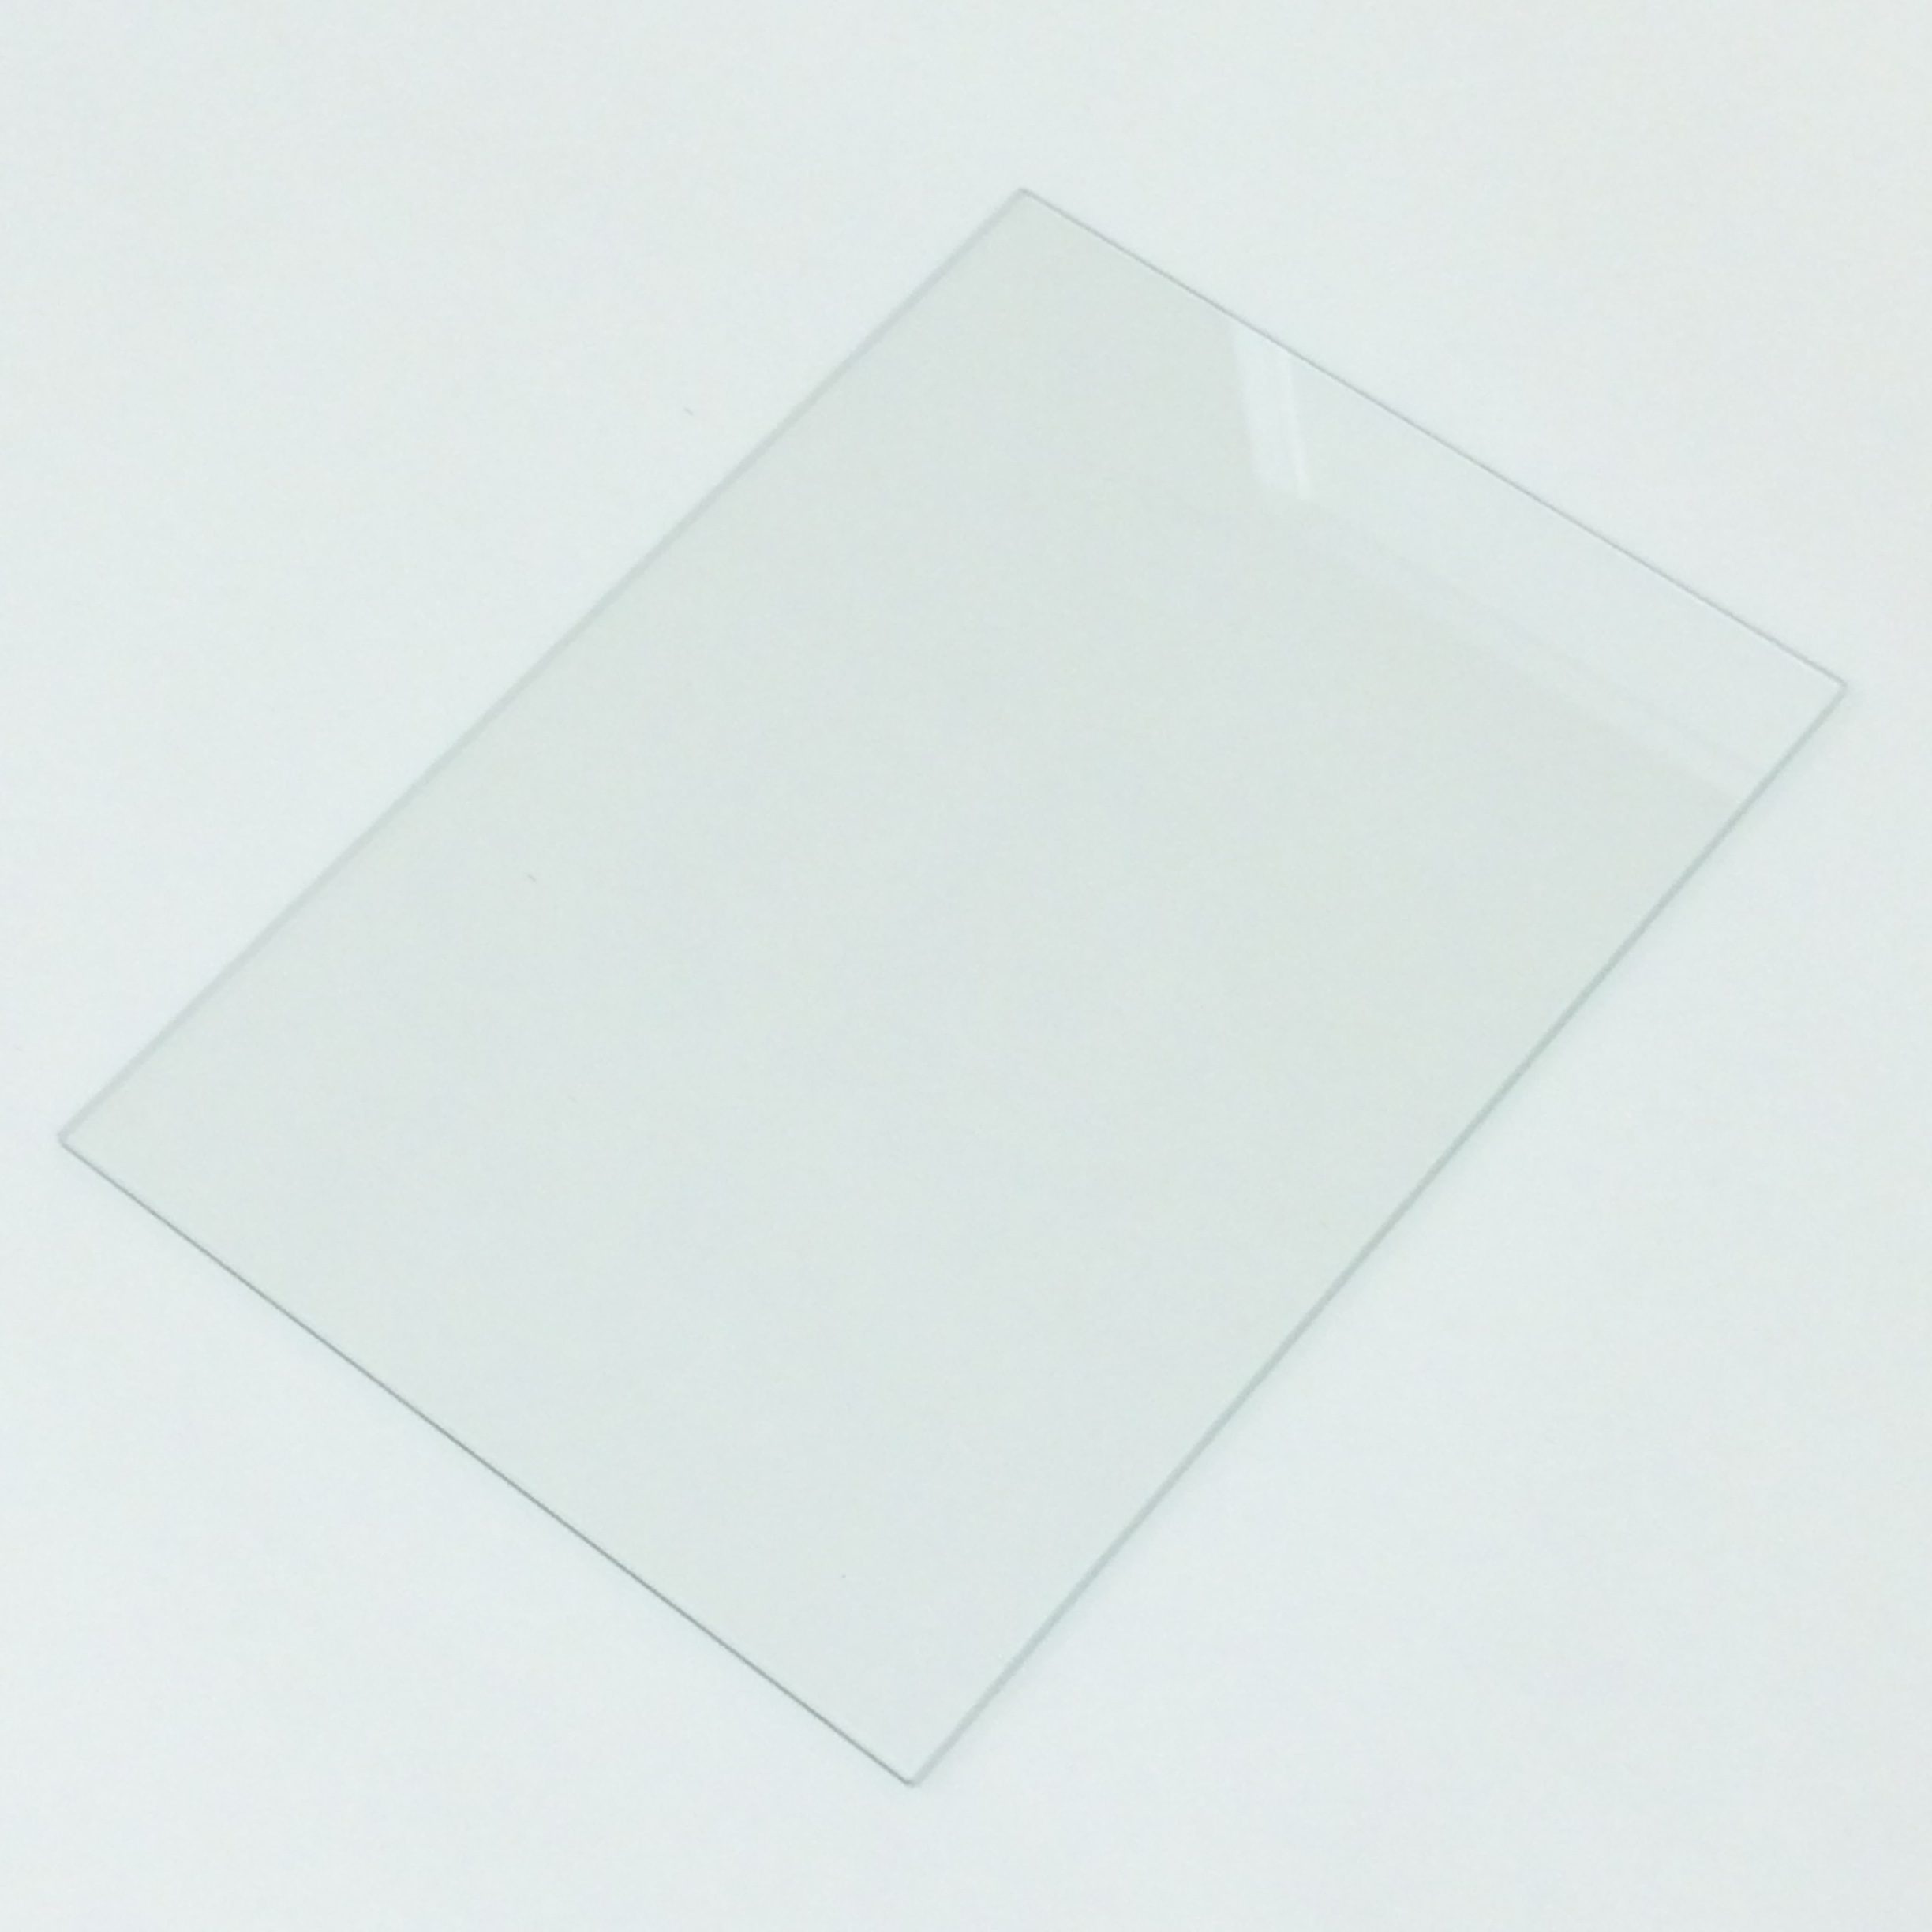 実験用耐熱ガラス「並硝子角板200×150×t2」